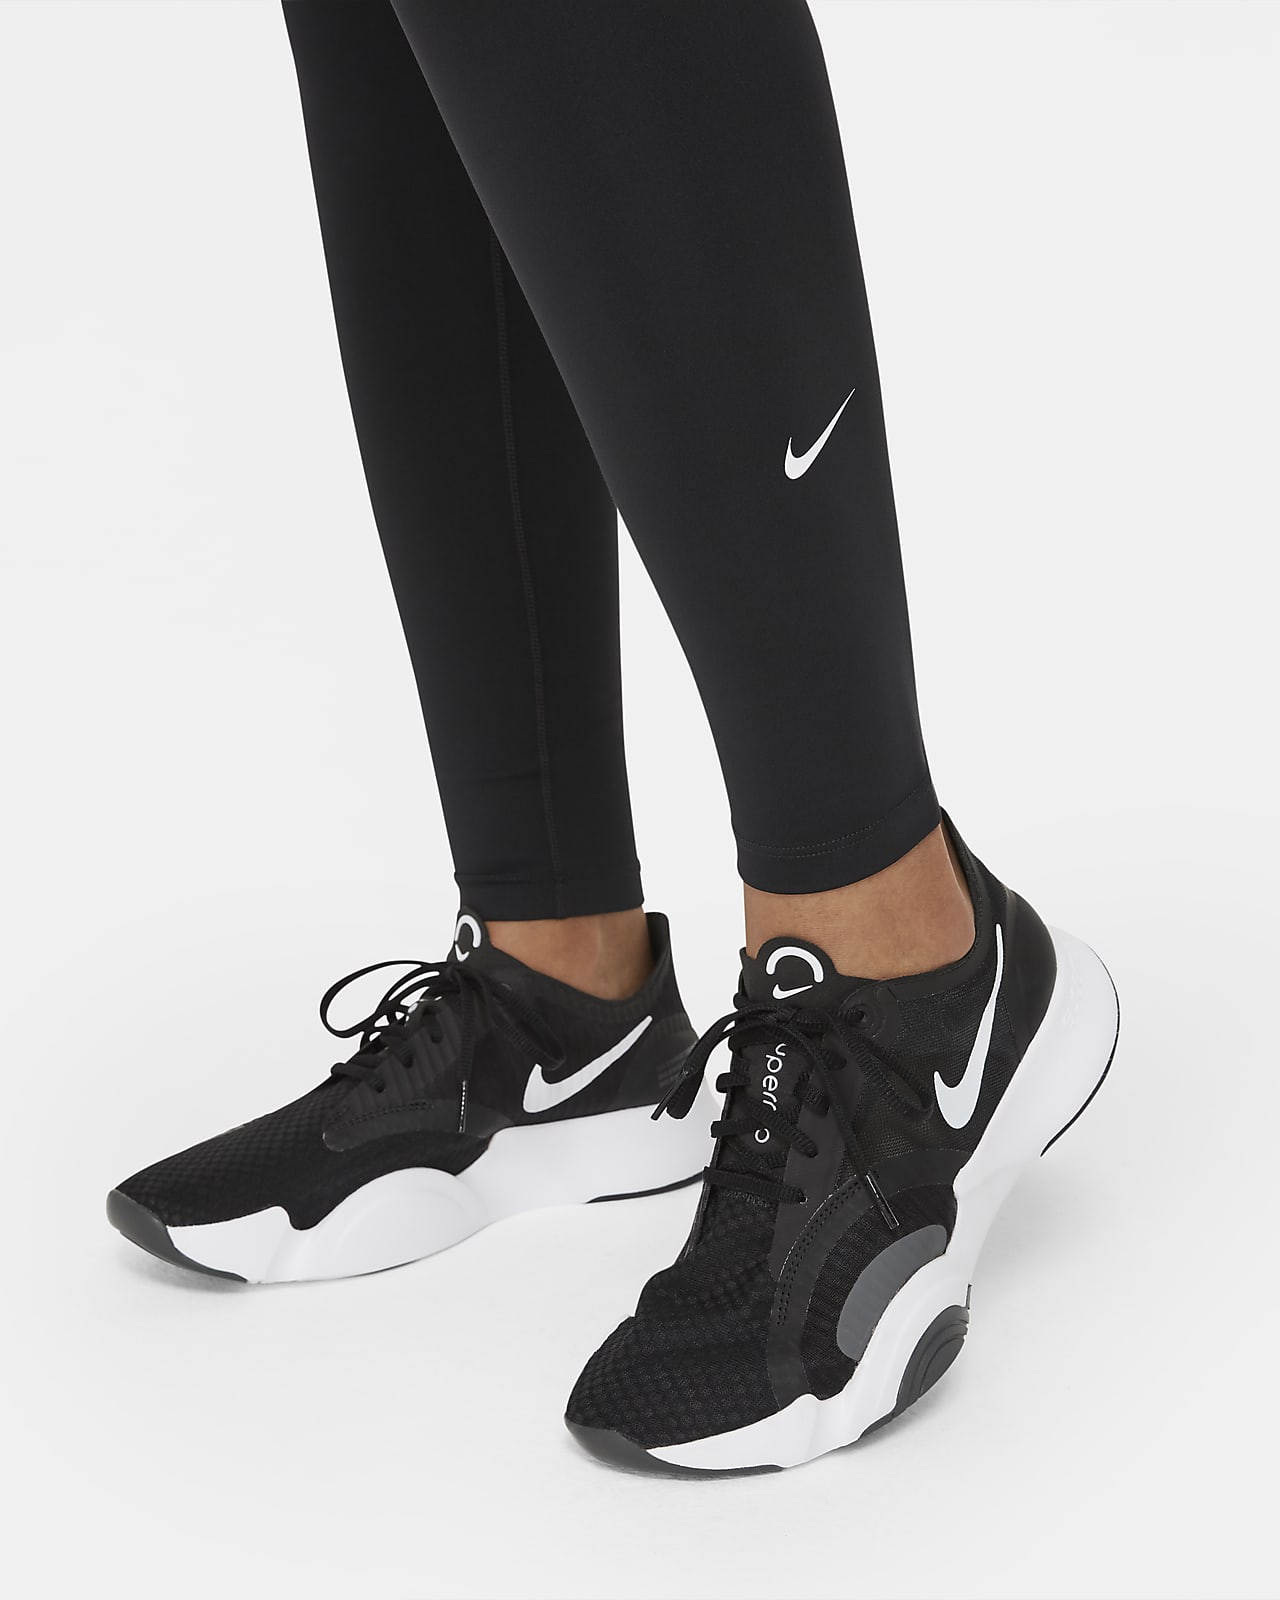 Leggings Nike SALDI: Acquista fino al −50%